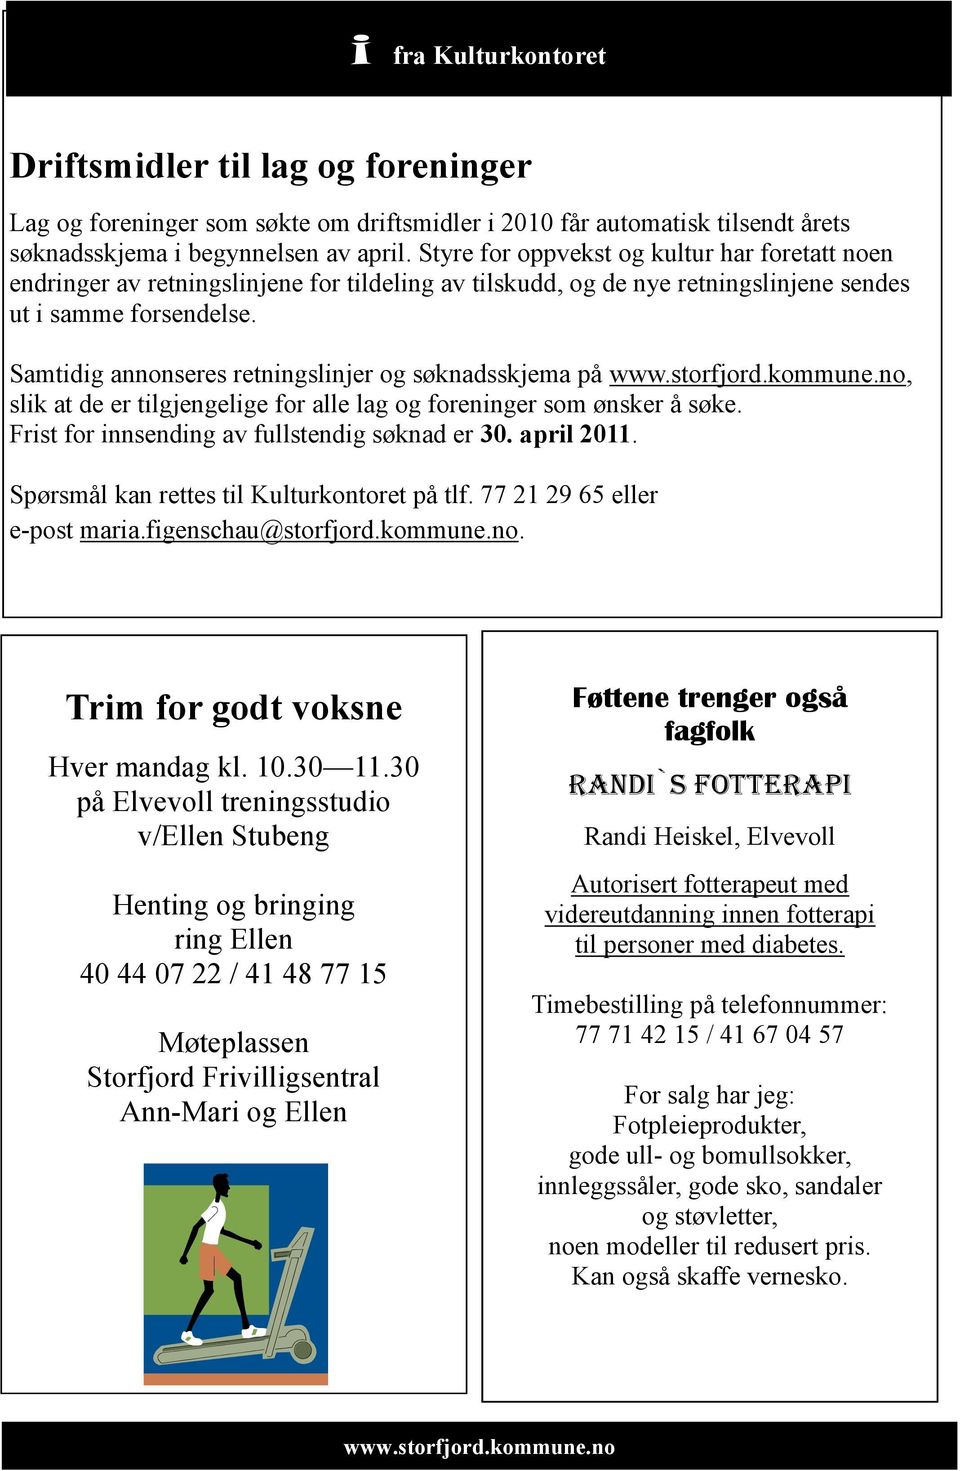 Samtidig annonseres retningslinjer og søknadsskjema på www.storfjord.kommune.no, slik at de er tilgjengelige for alle lag og foreninger som ønsker å søke.